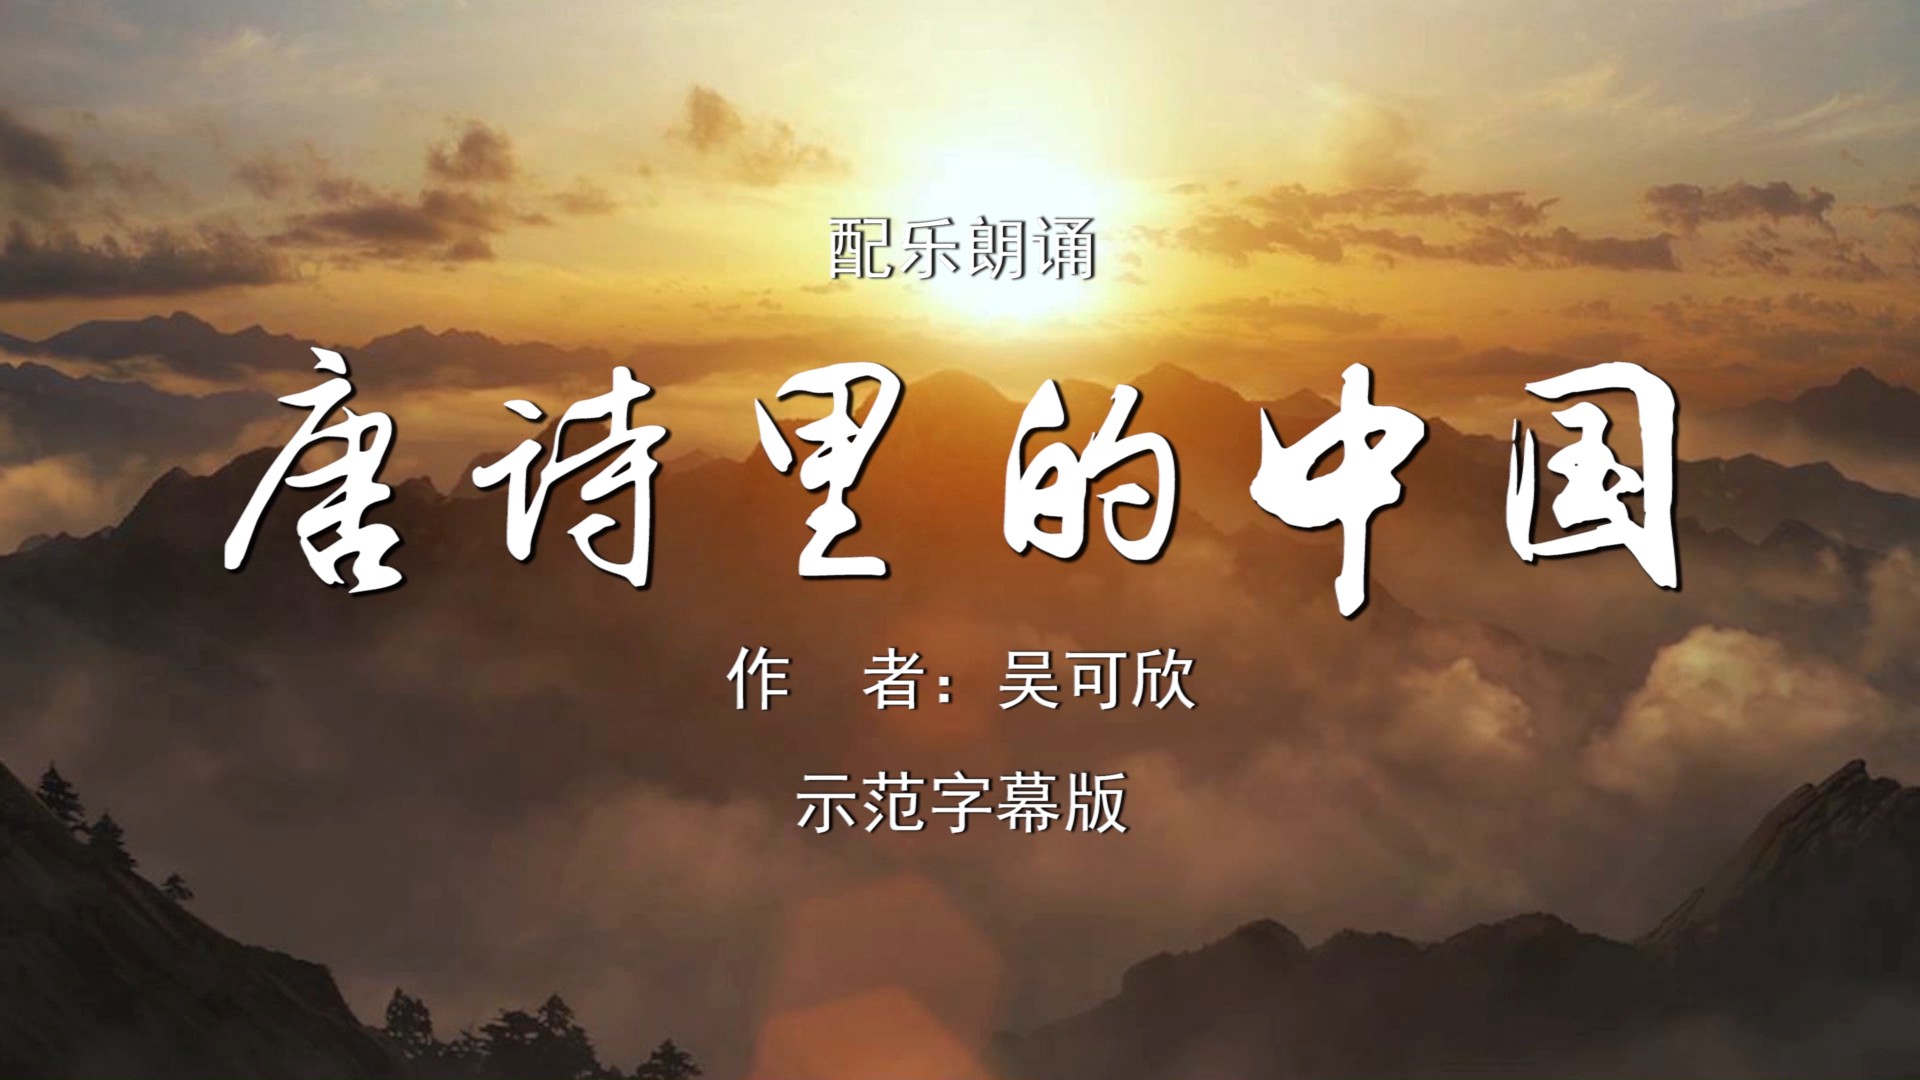 唐诗里的中国 诗歌朗诵配乐伴奏舞台演出LED背景视频素材TV